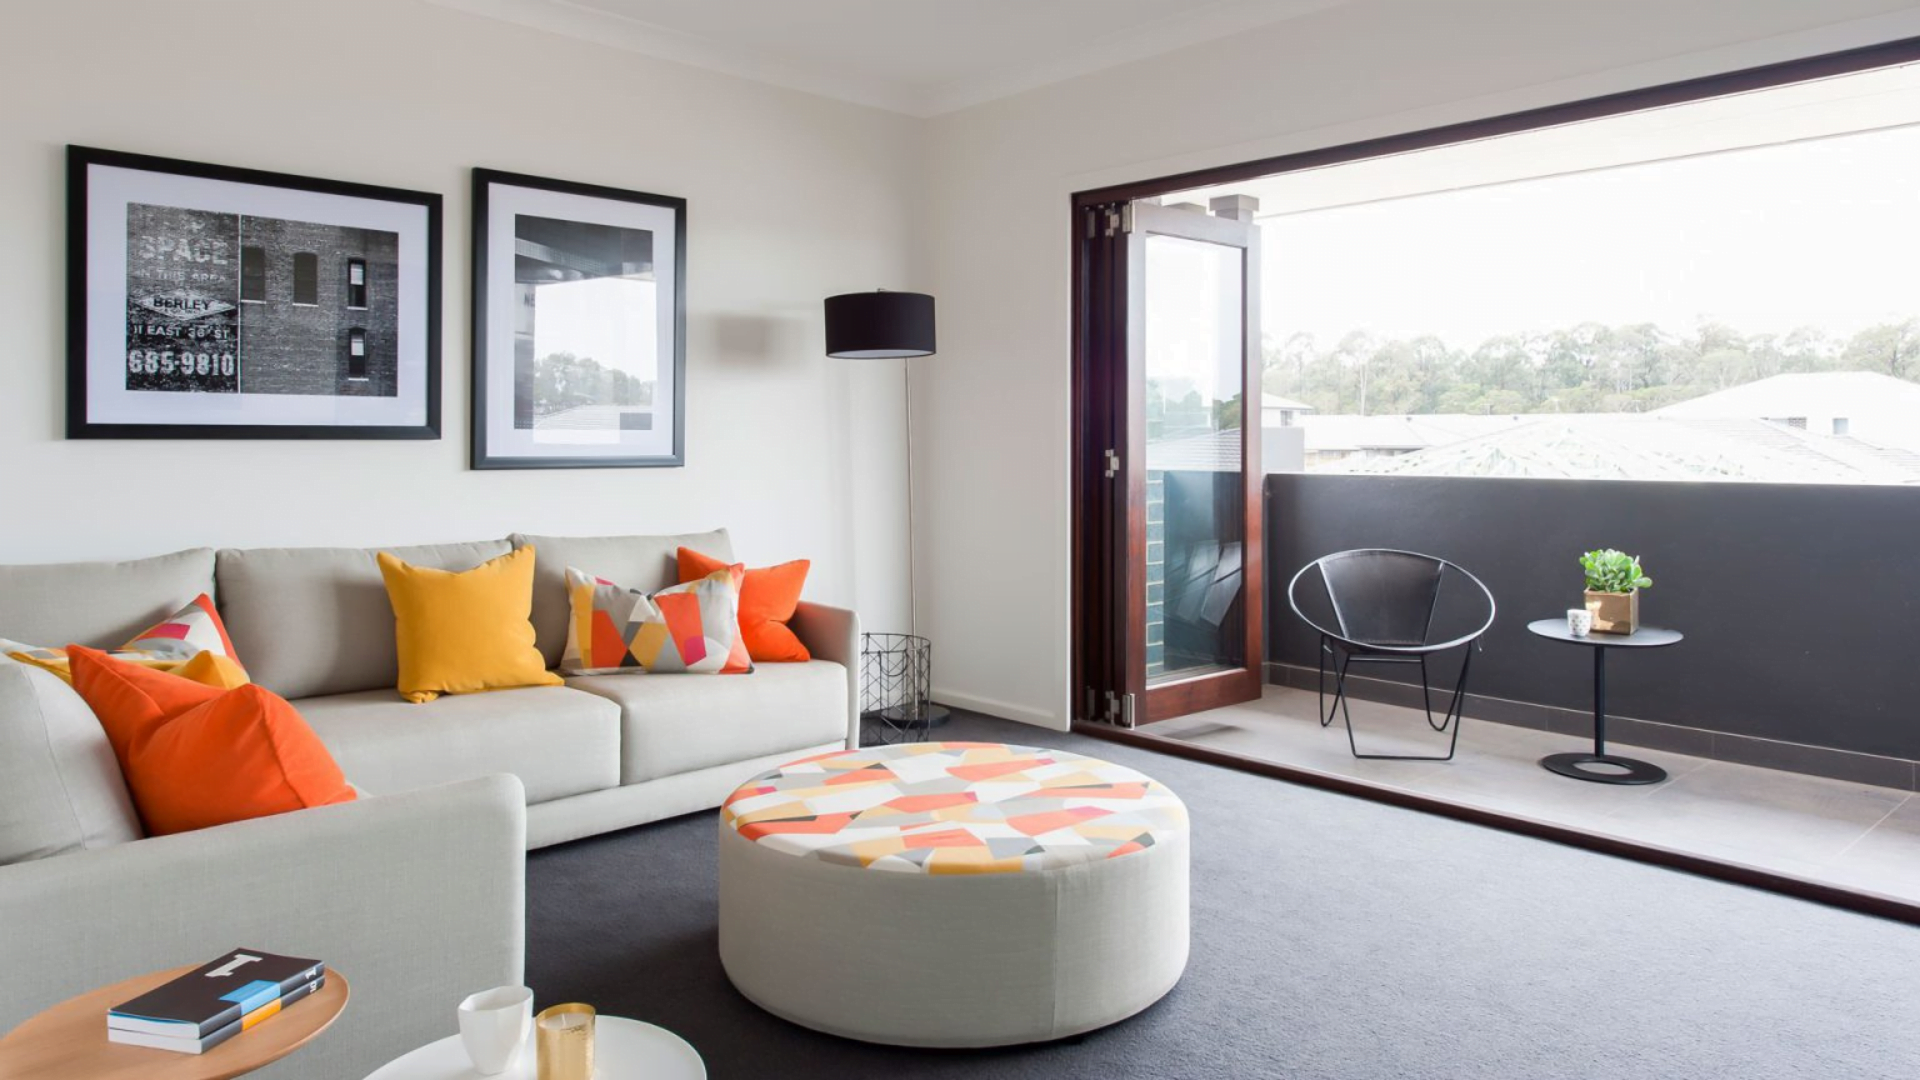  lounge-room-bifold-doors-terrace